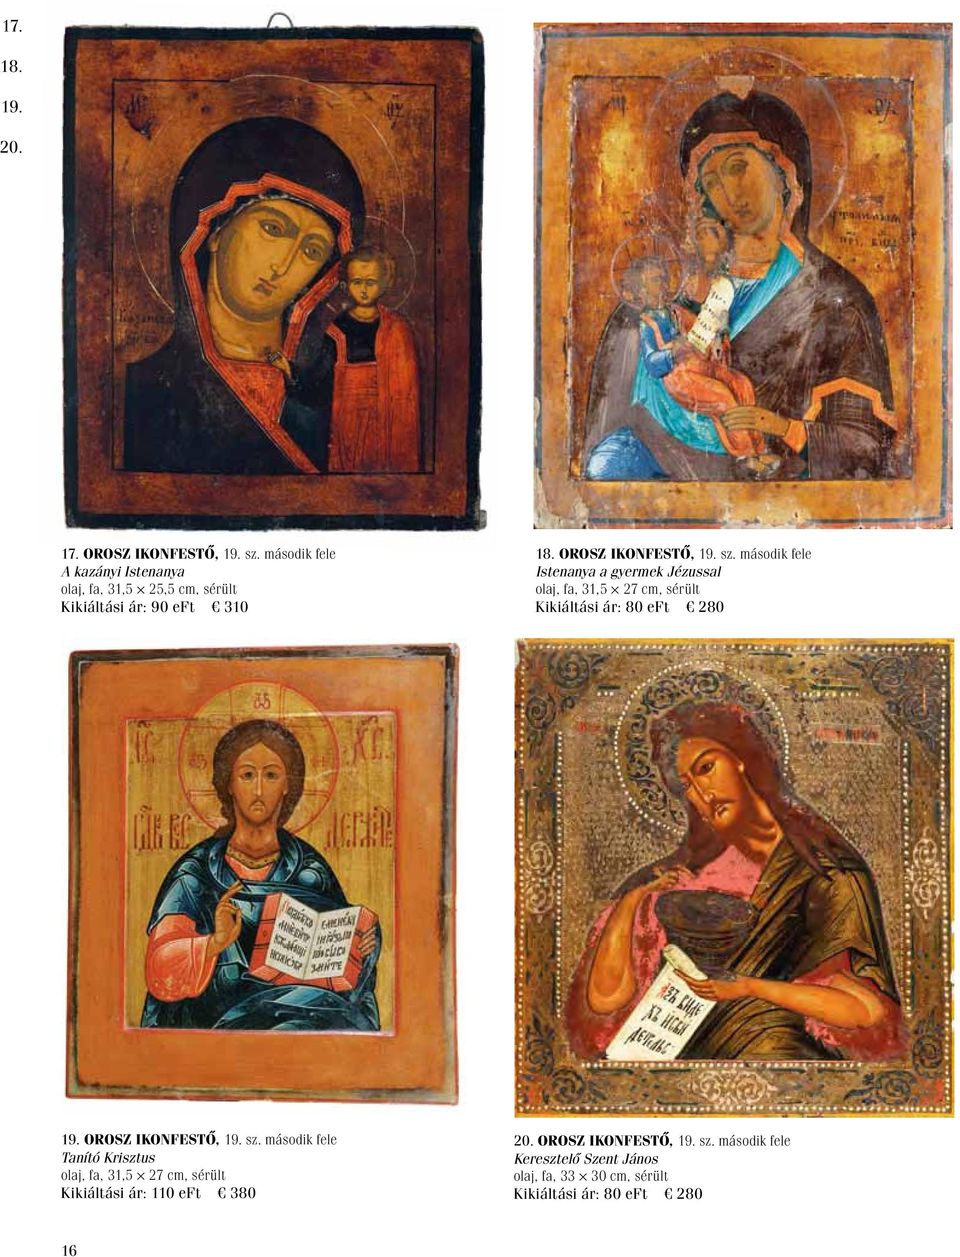 második fele Istenanya a gyermek Jézussal olaj, fa, 31,5 27 cm, sérült Kikiáltási ár: 80 eft 280 19. Orosz ikonfestő, 19.